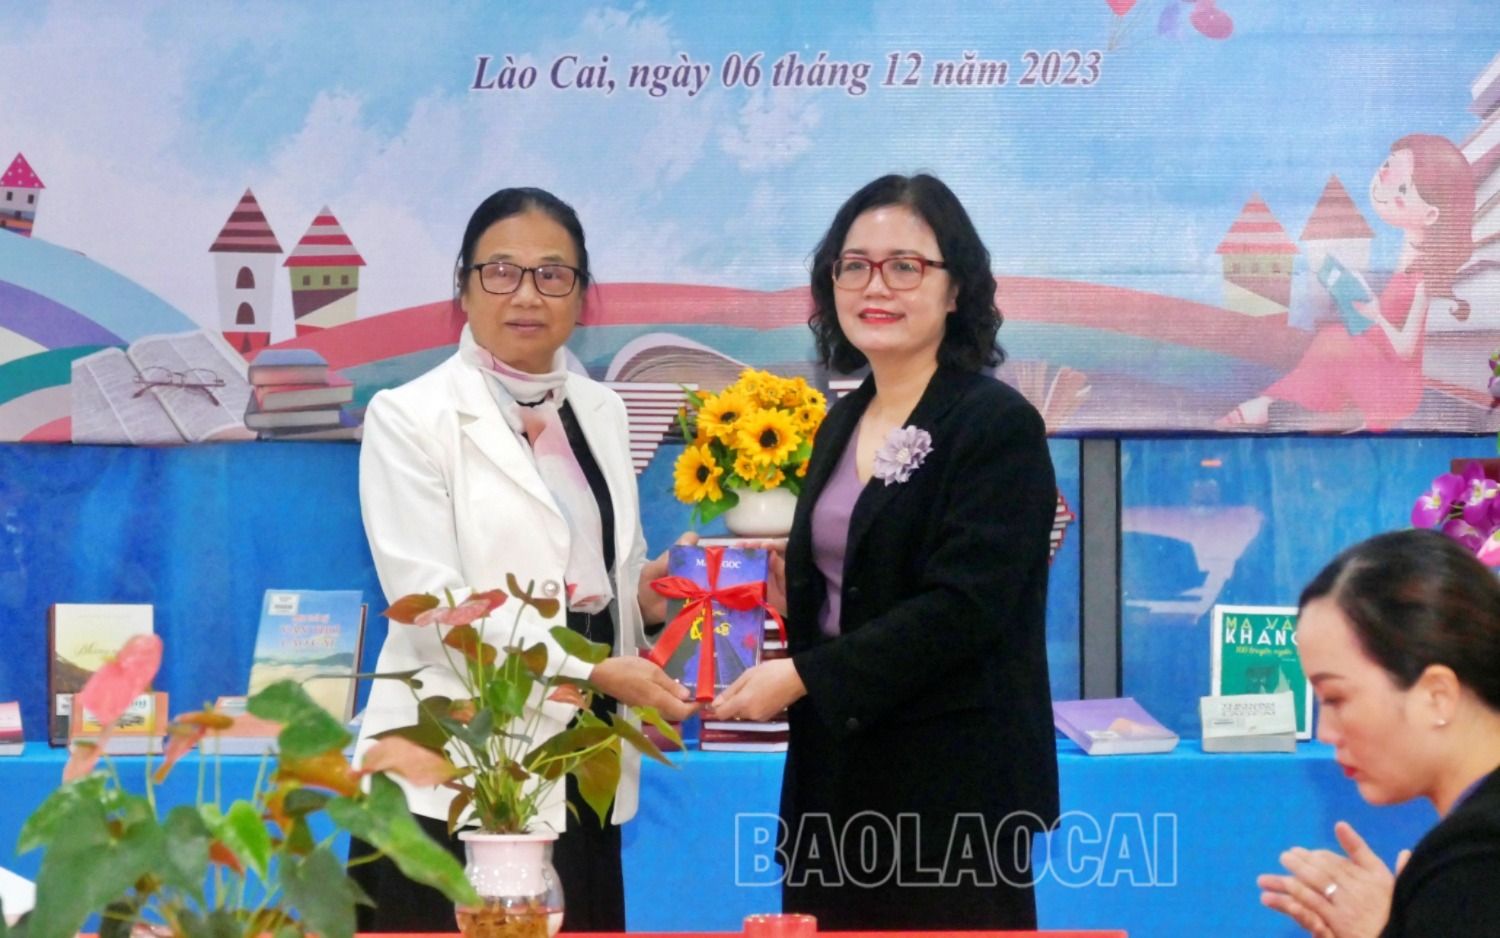 Lào Cai: Hội nghị bạn đọc và giao lưu tác giả, tác phẩm văn học địa phương - Ảnh 7.